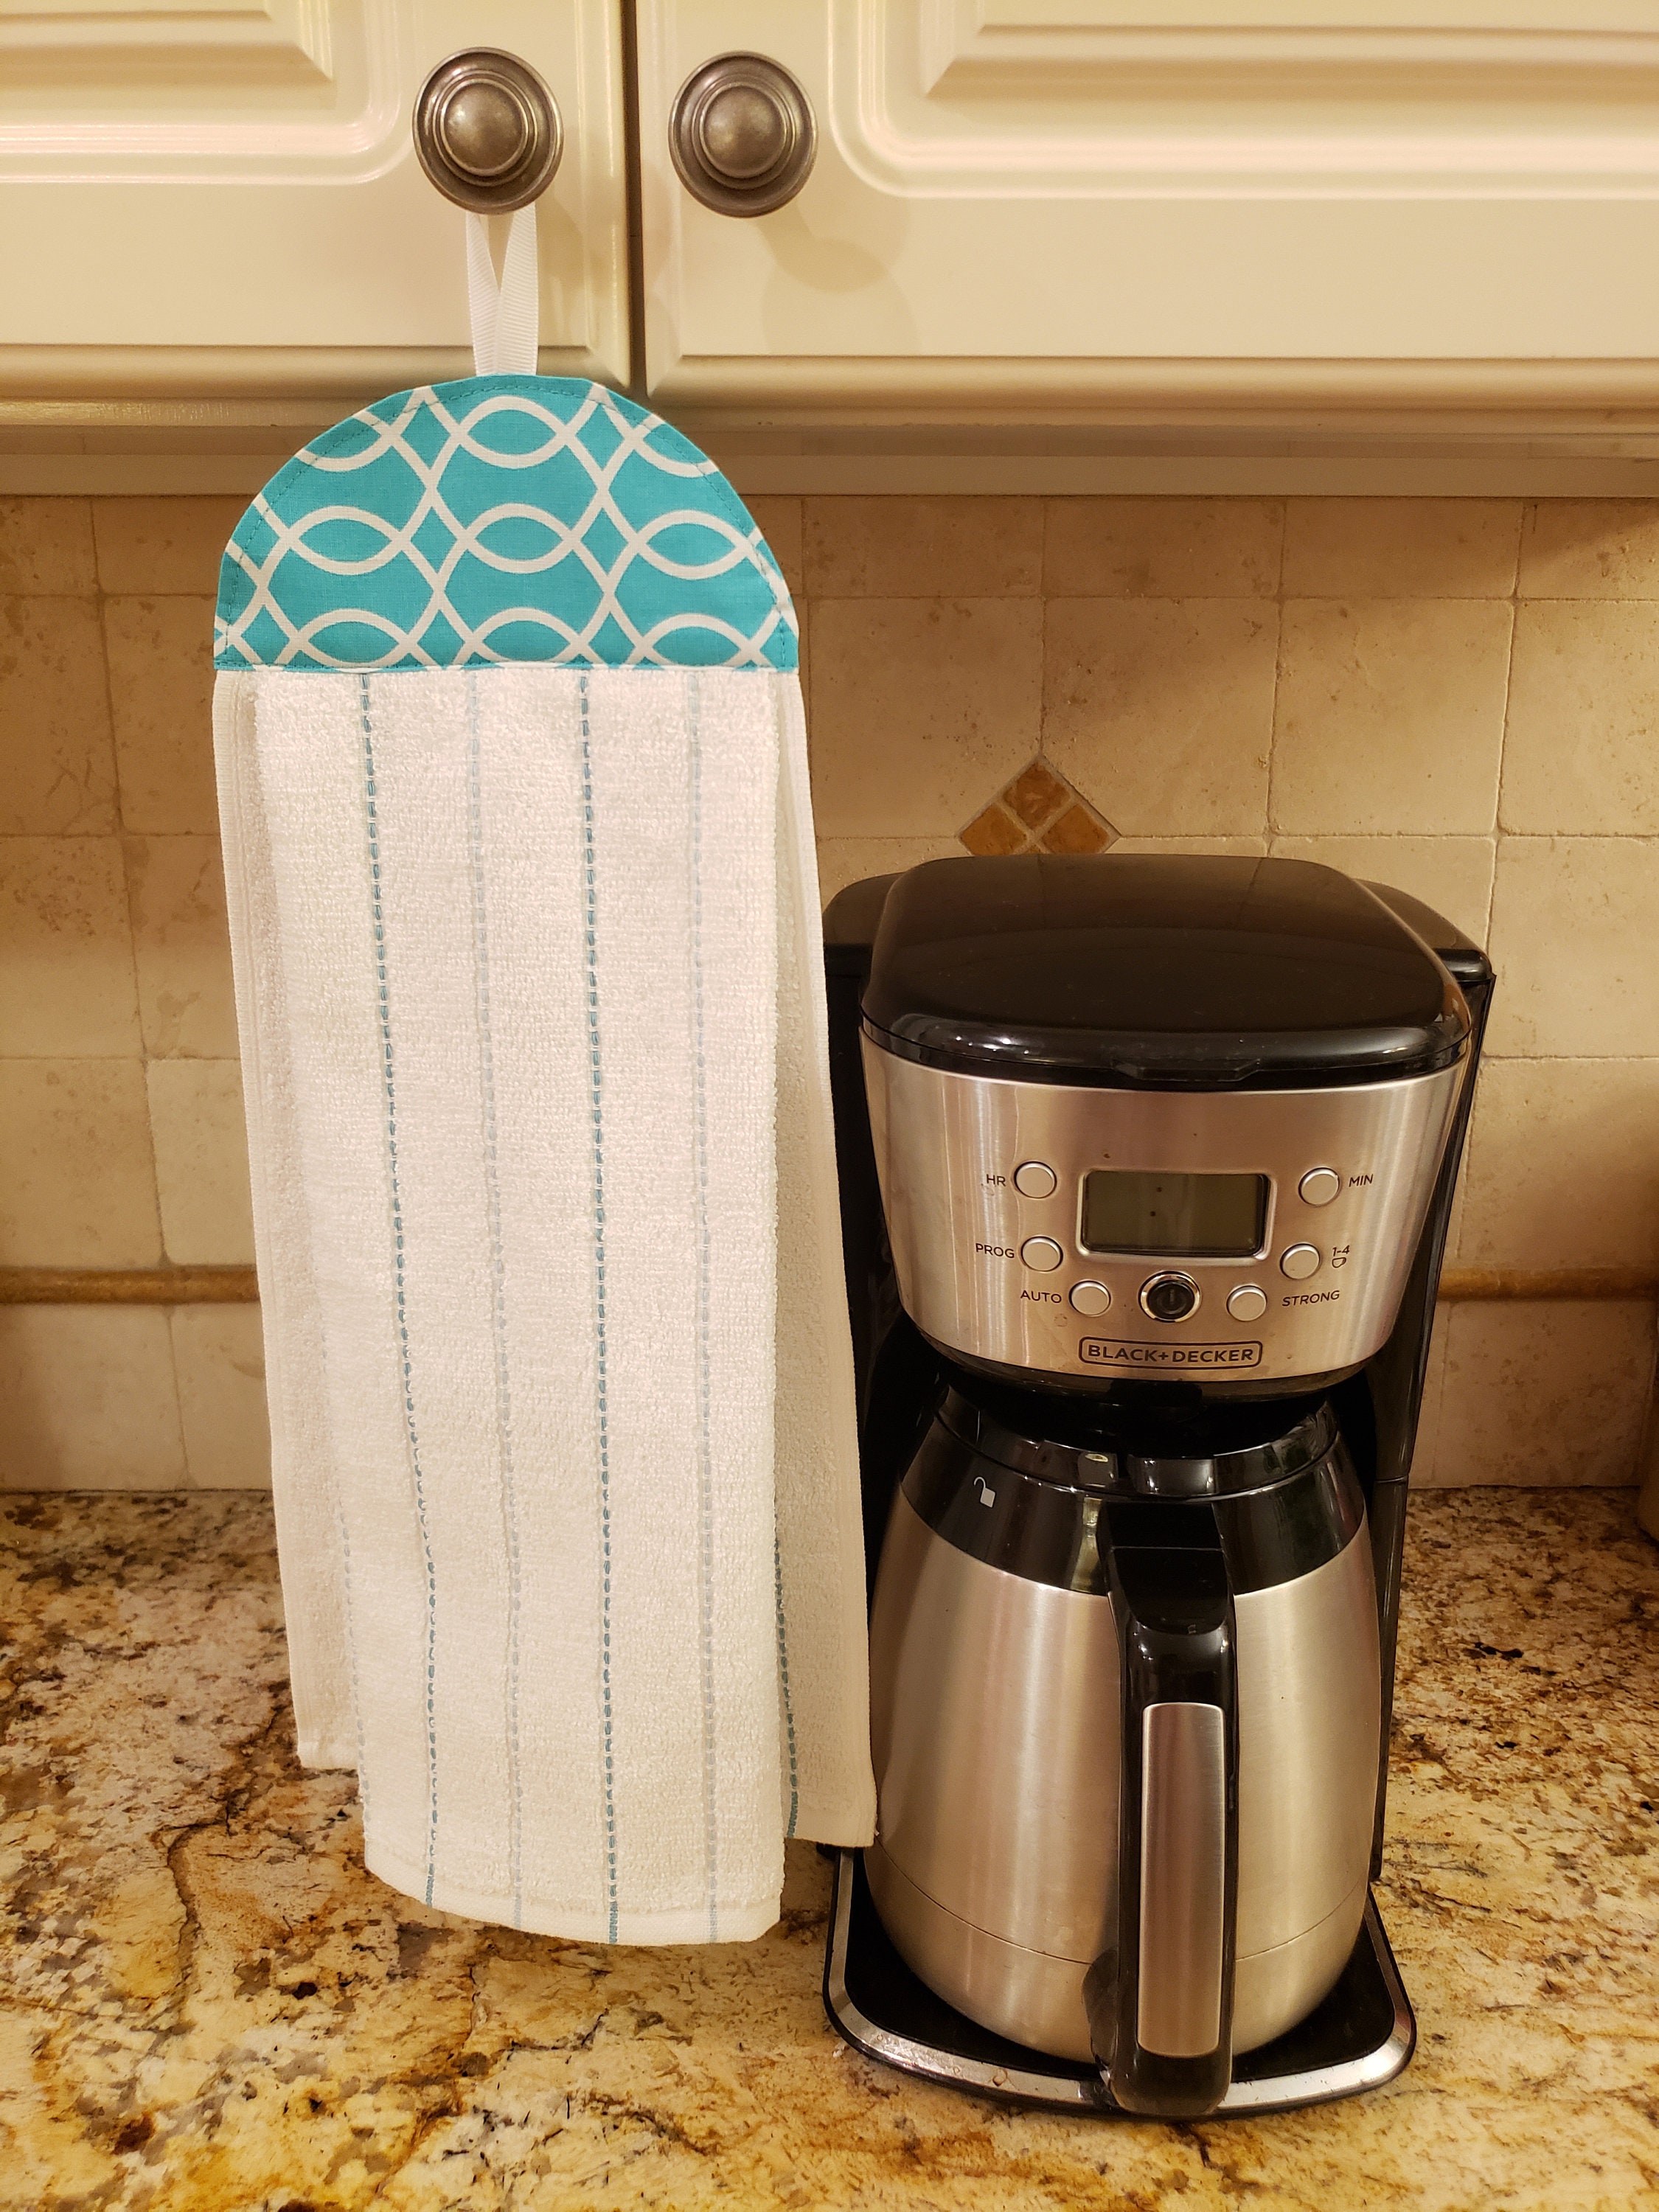 Kitchenaid Towels, Hanging Dish Towel, Kitchen Towel, Hand Towel